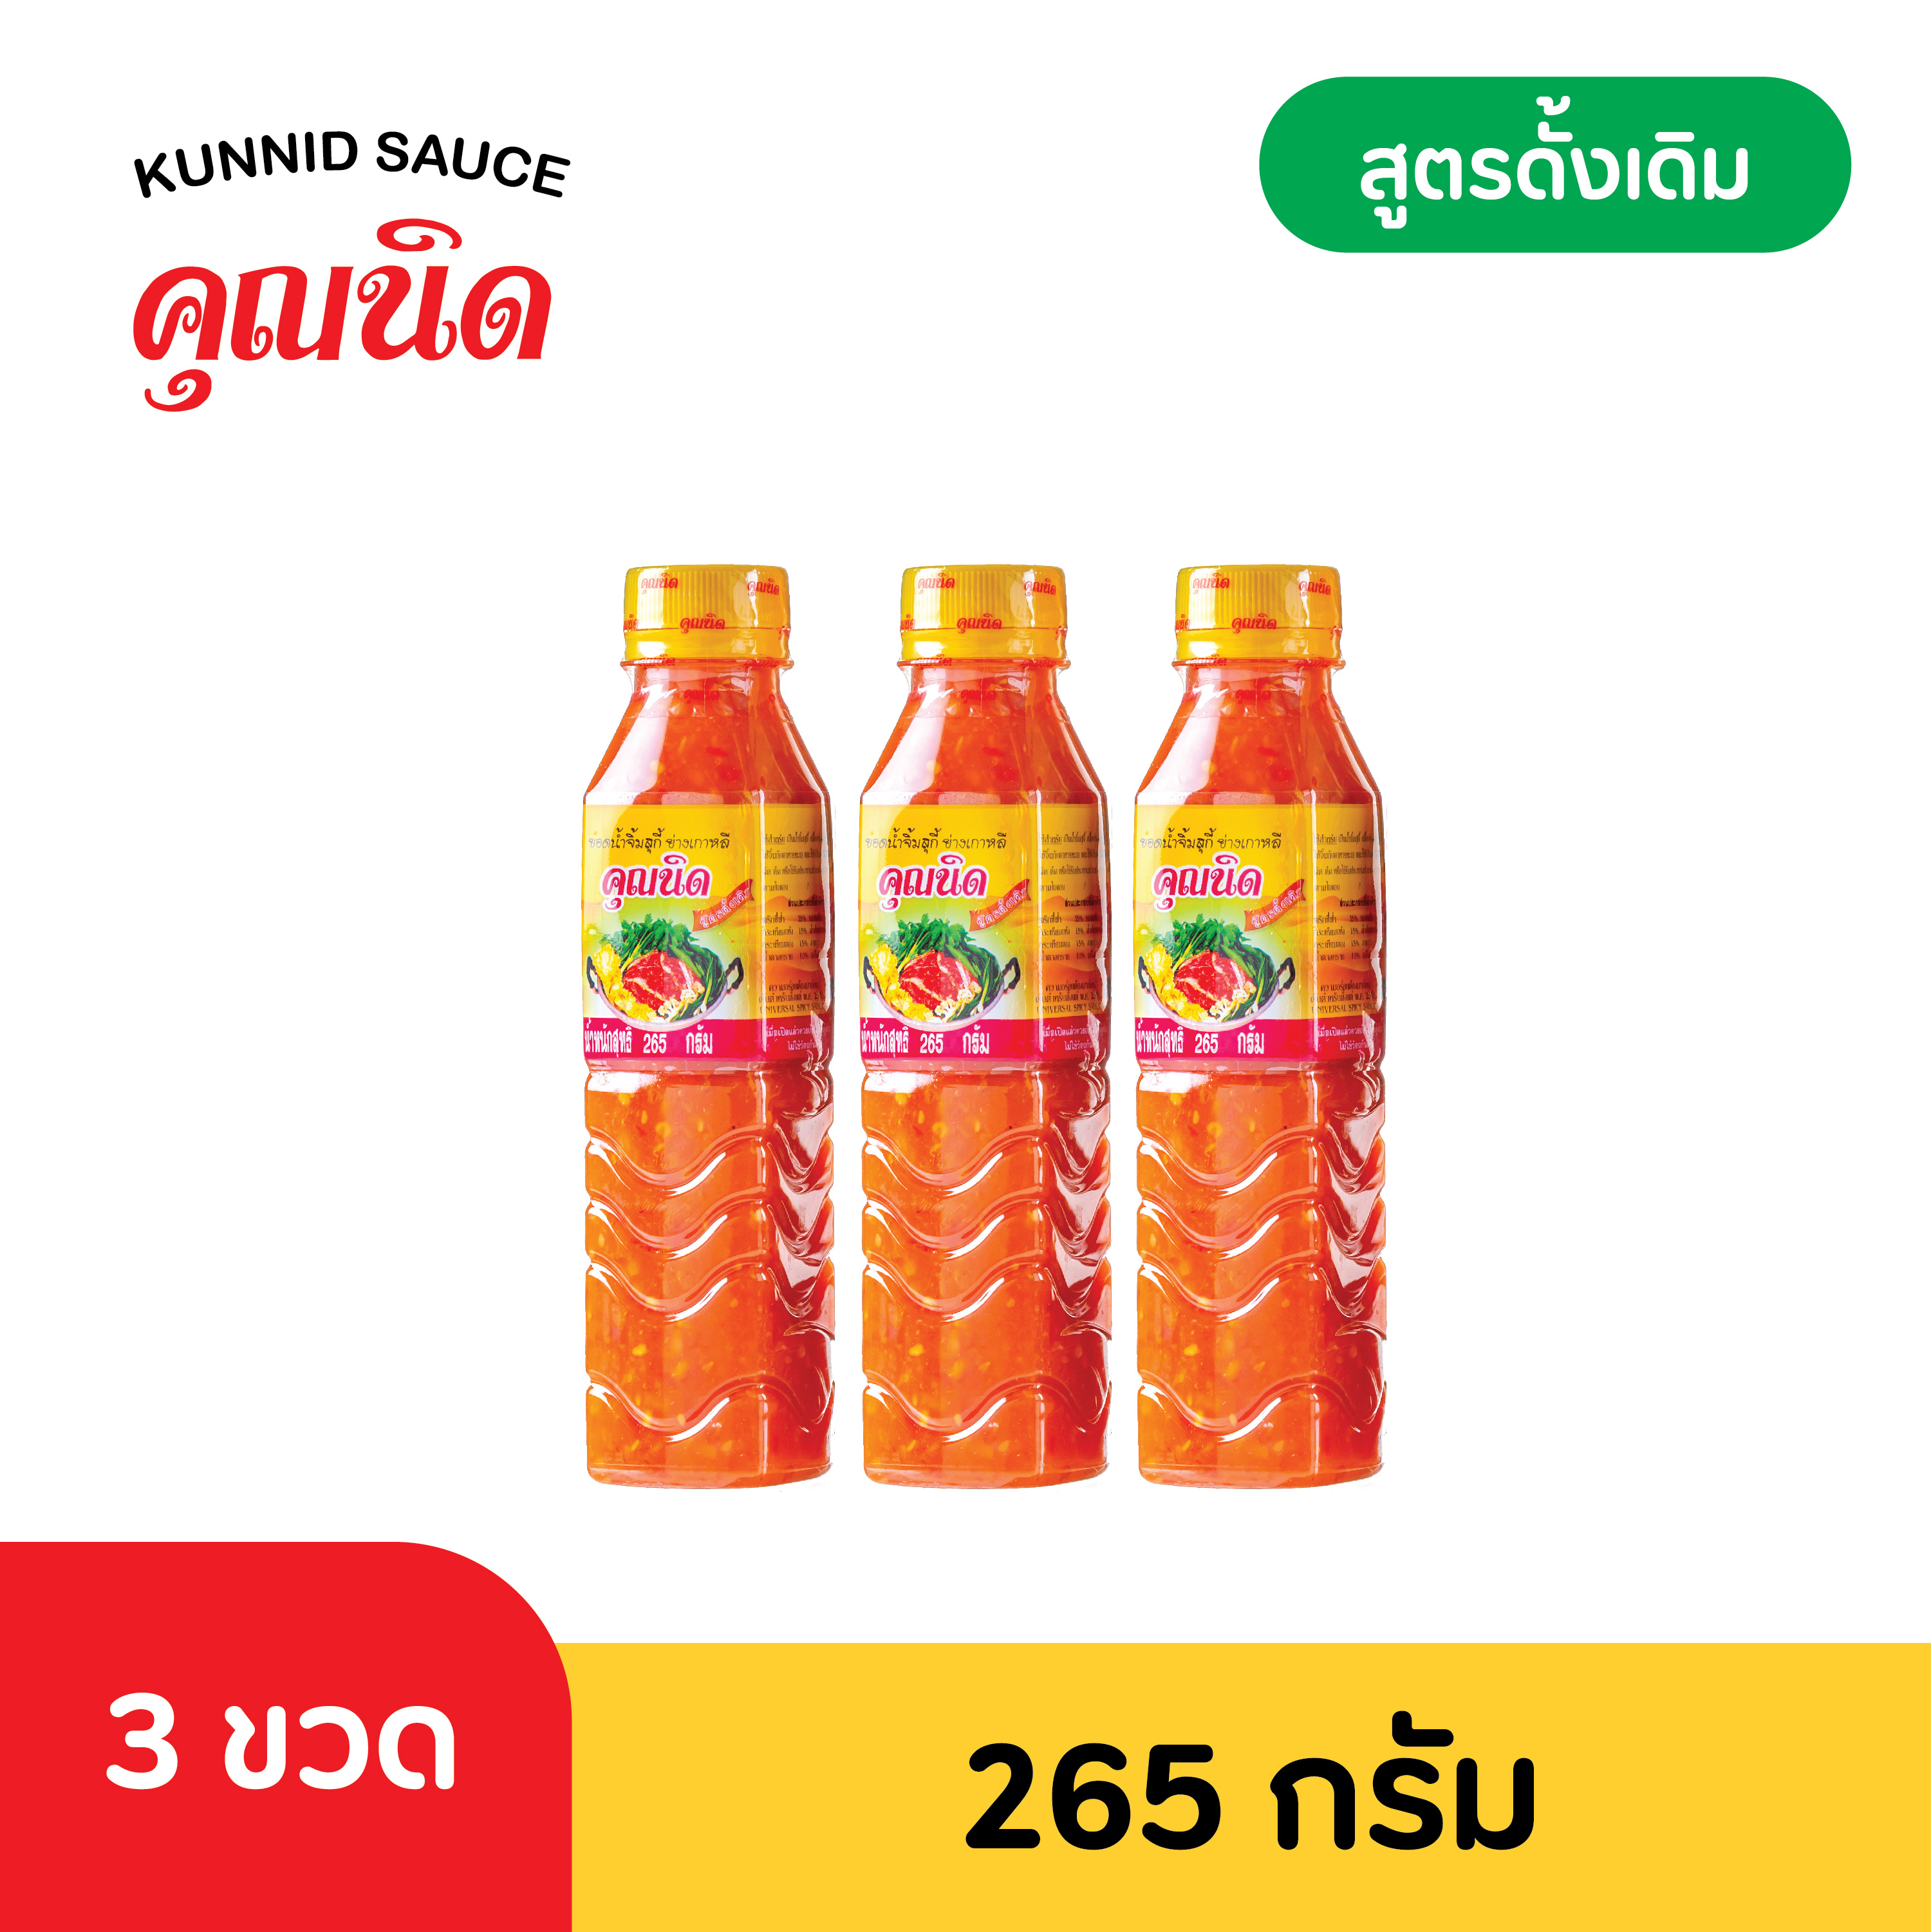 [3 ขวด] น้ำจิ้มคุณนิด น้ำจิ้มสุกี้-หมูกระทะ ขนาด 265 กรัม (Thai Spicy Hot Pot & Grill Sauce)